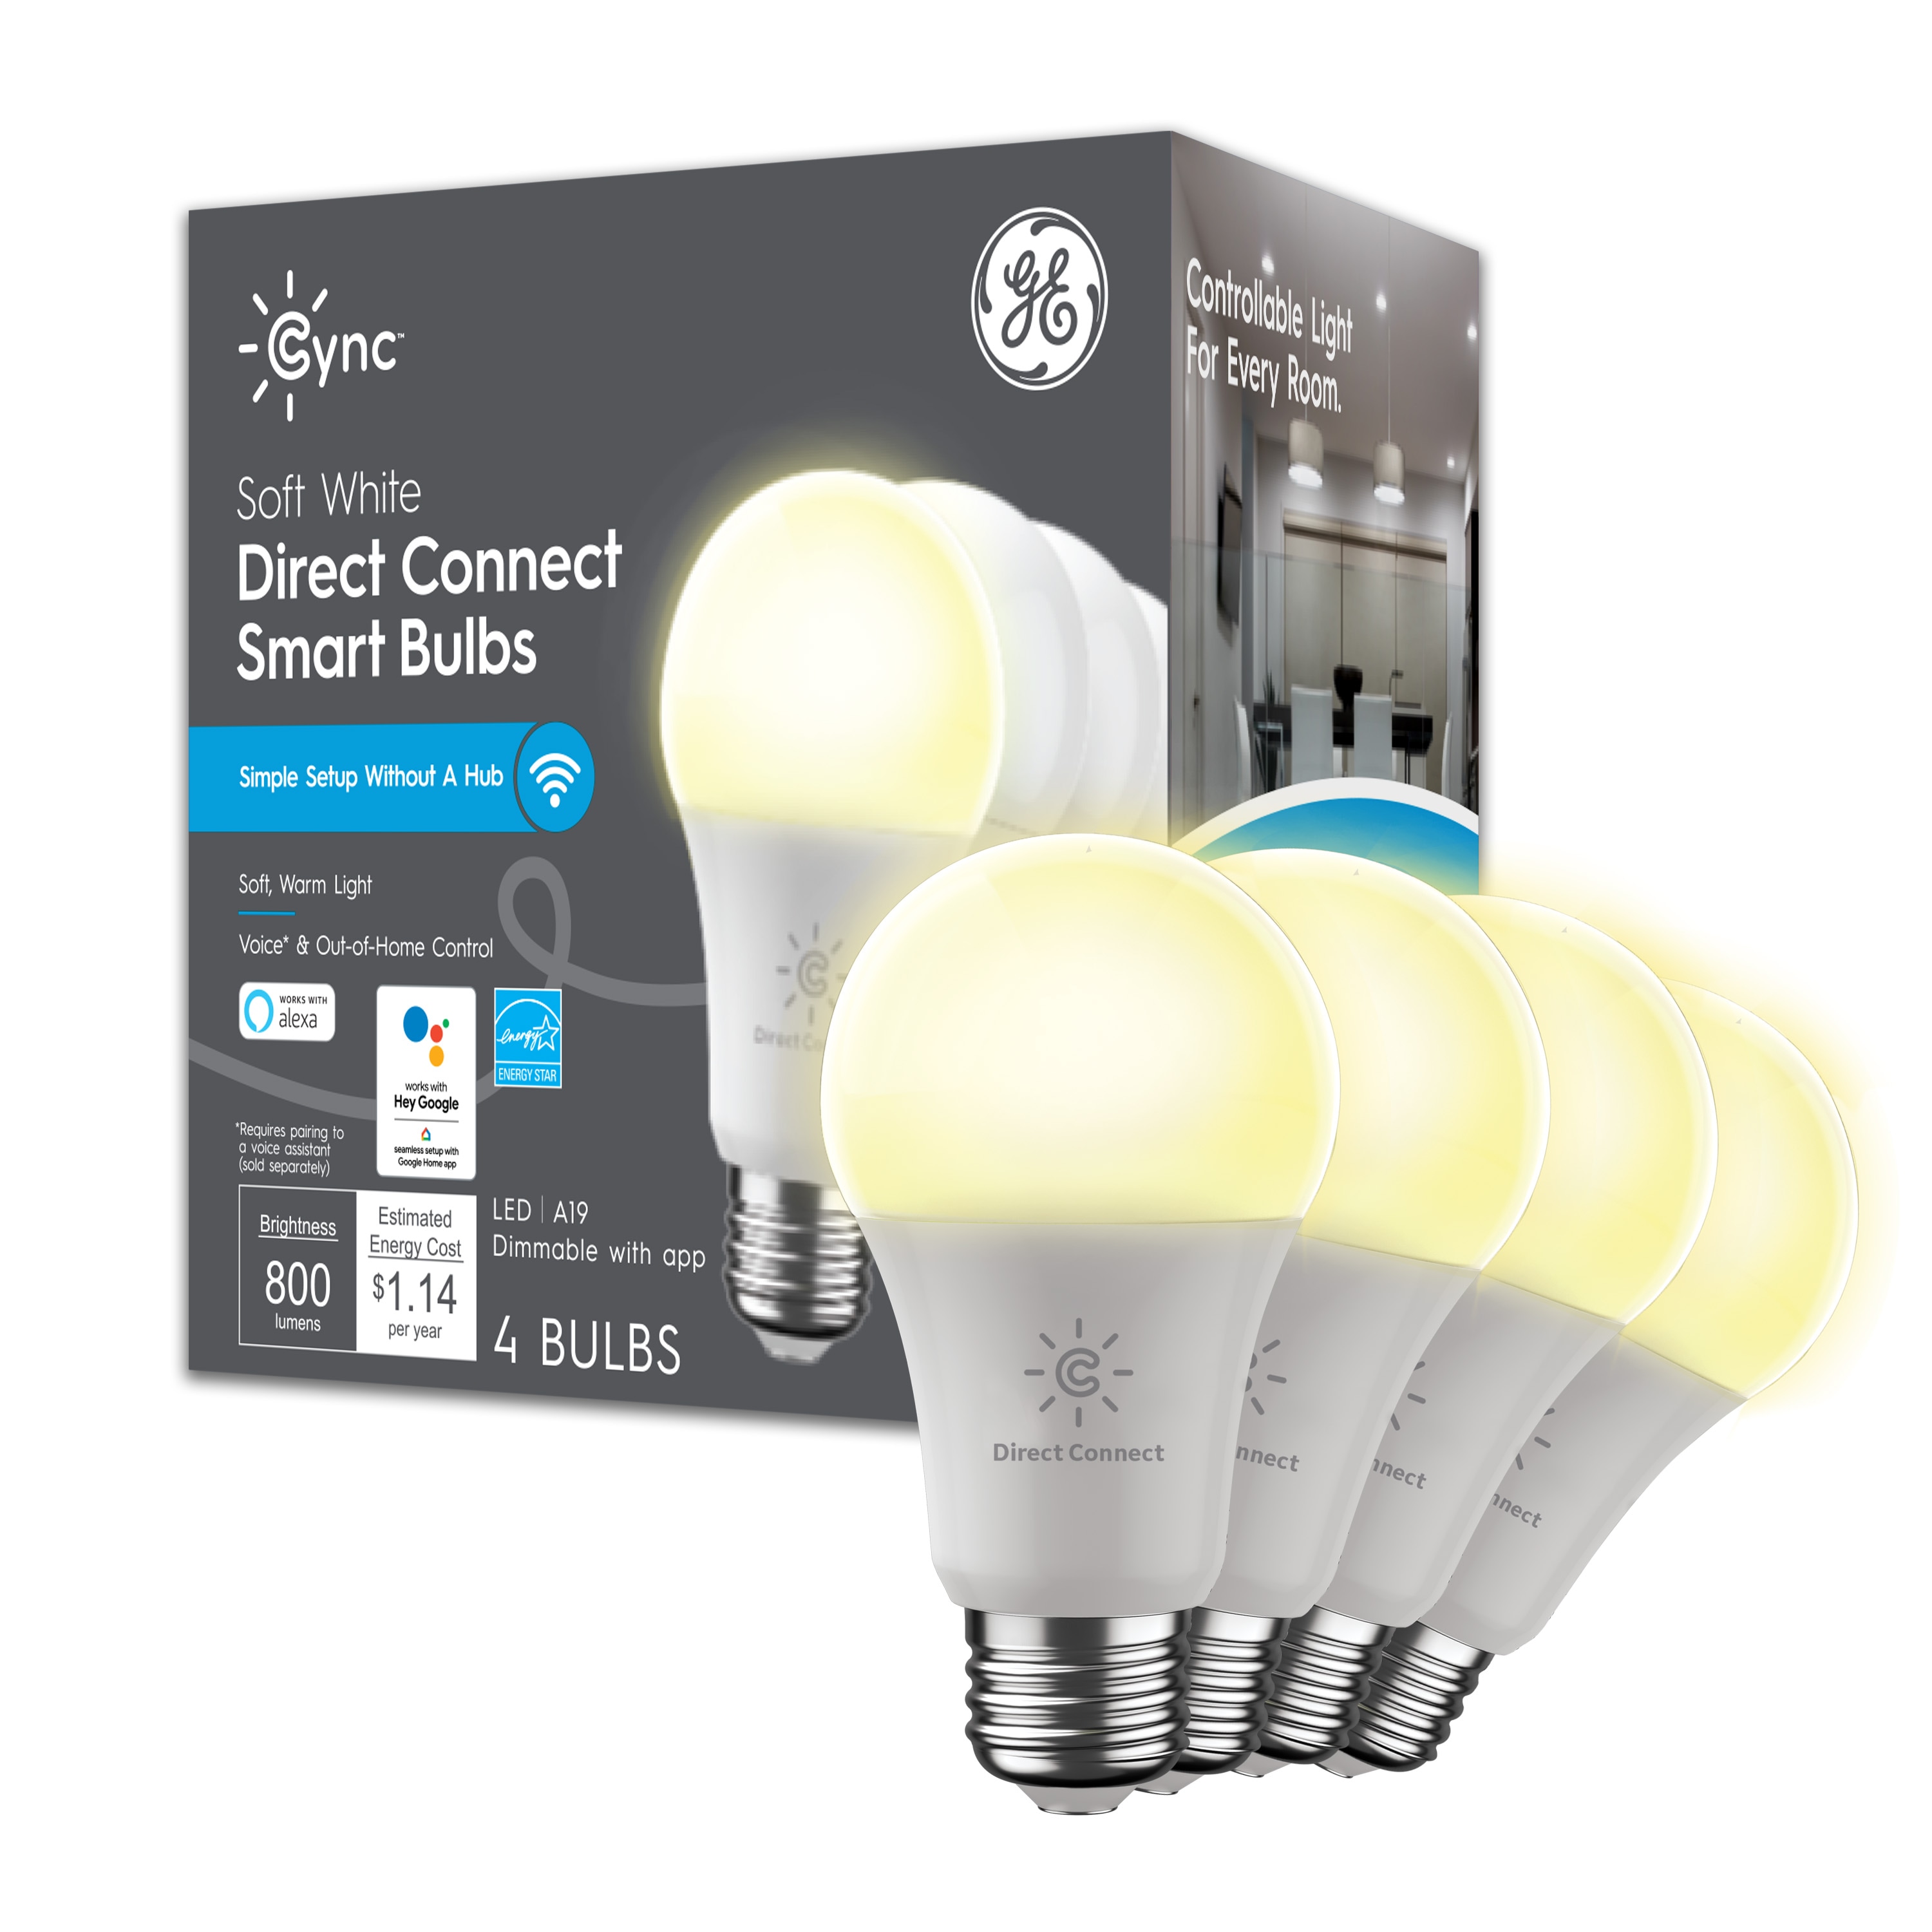 Shop GE GE Lighting Home Security Starter Kit at Lowes.com